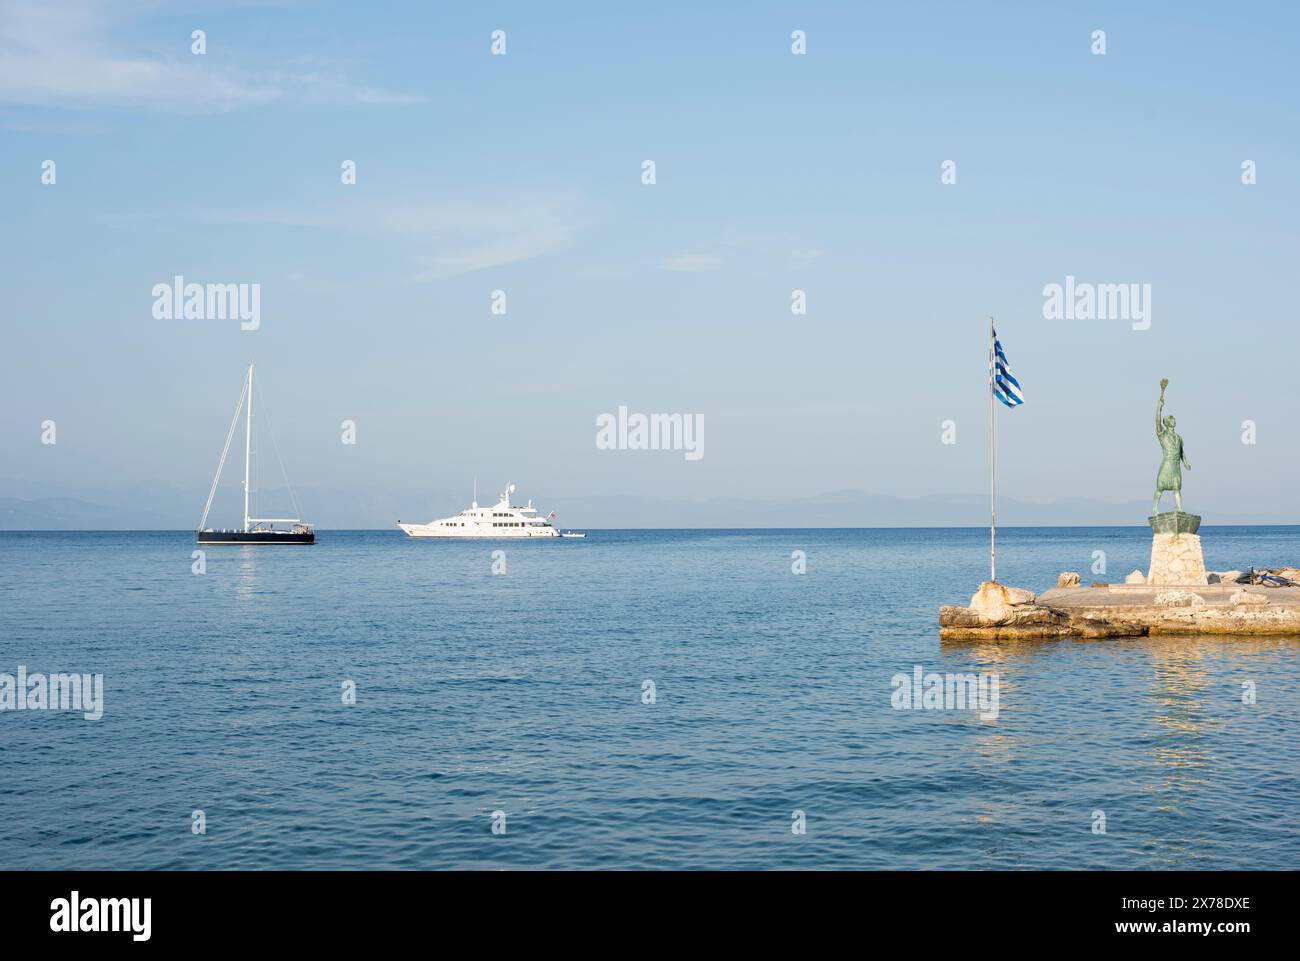 Statua del porto di Gaios sull'isola di Paxos in Grecia, sullo sfondo di barche e barche a vela che navigano nel Mar Mediterraneo Foto Stock